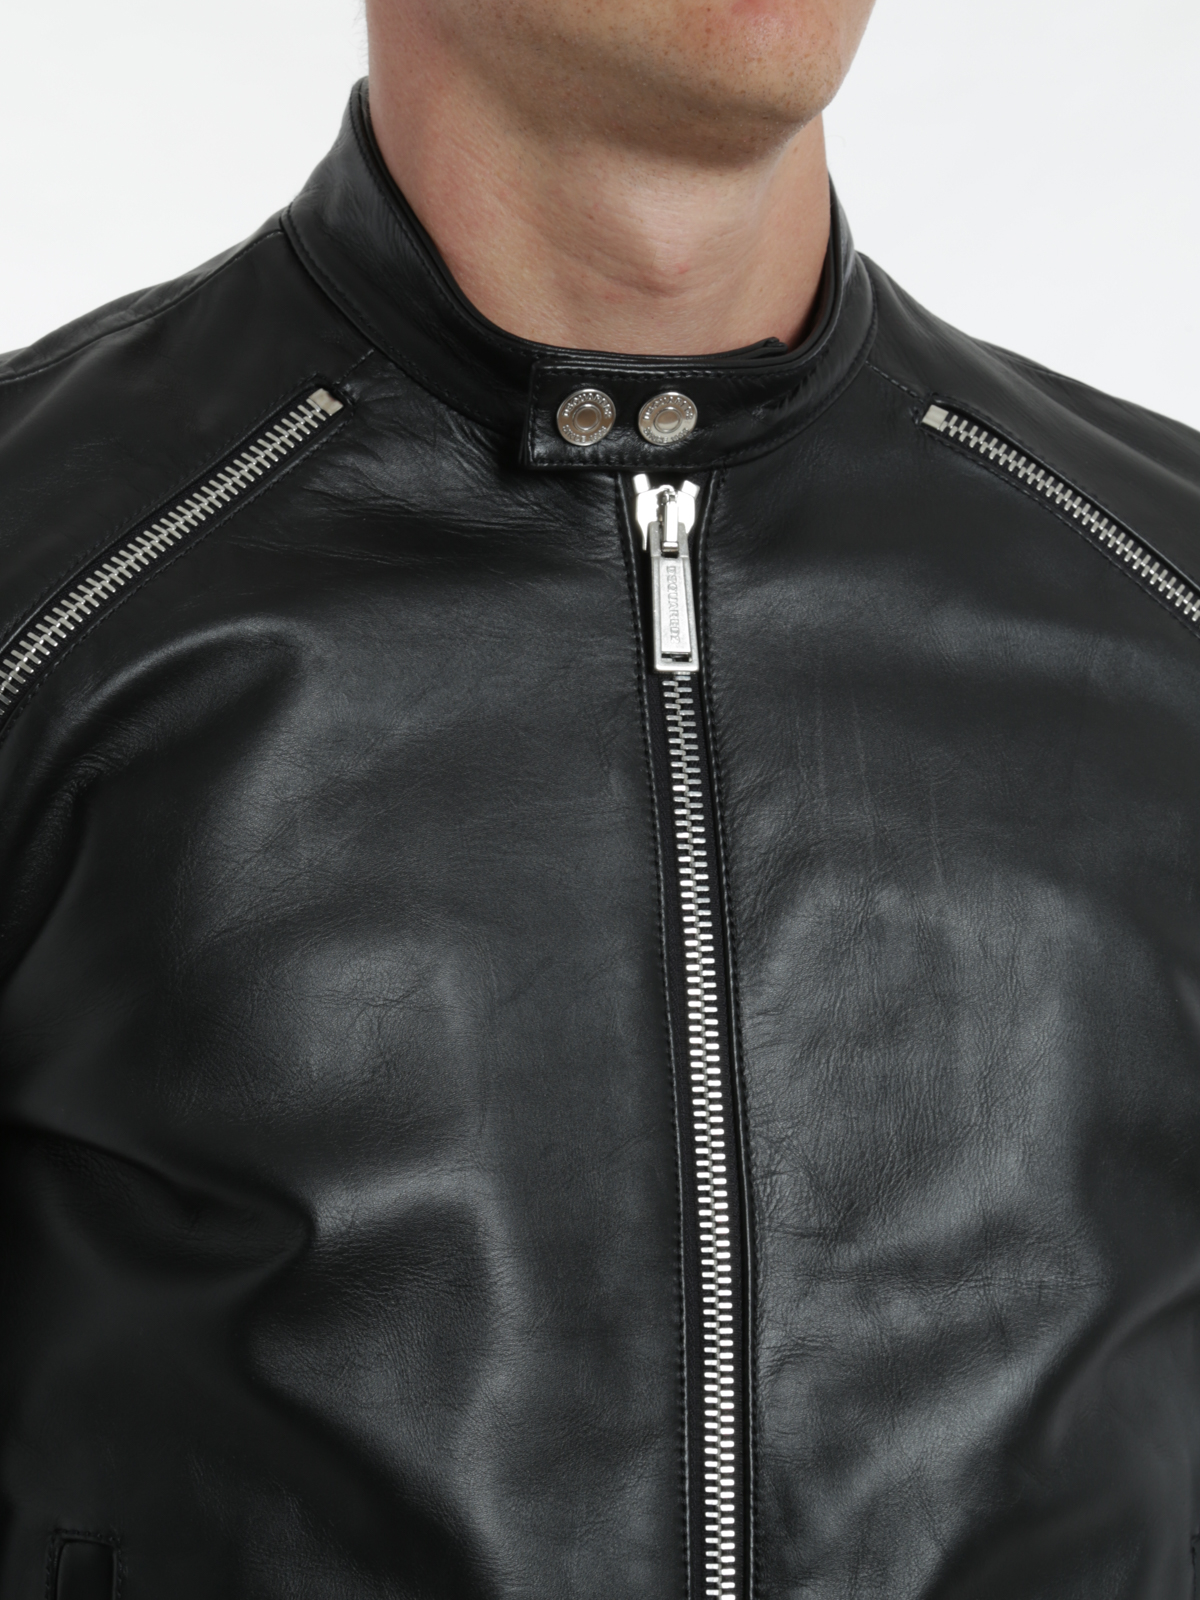 dsquared biker leather jacket